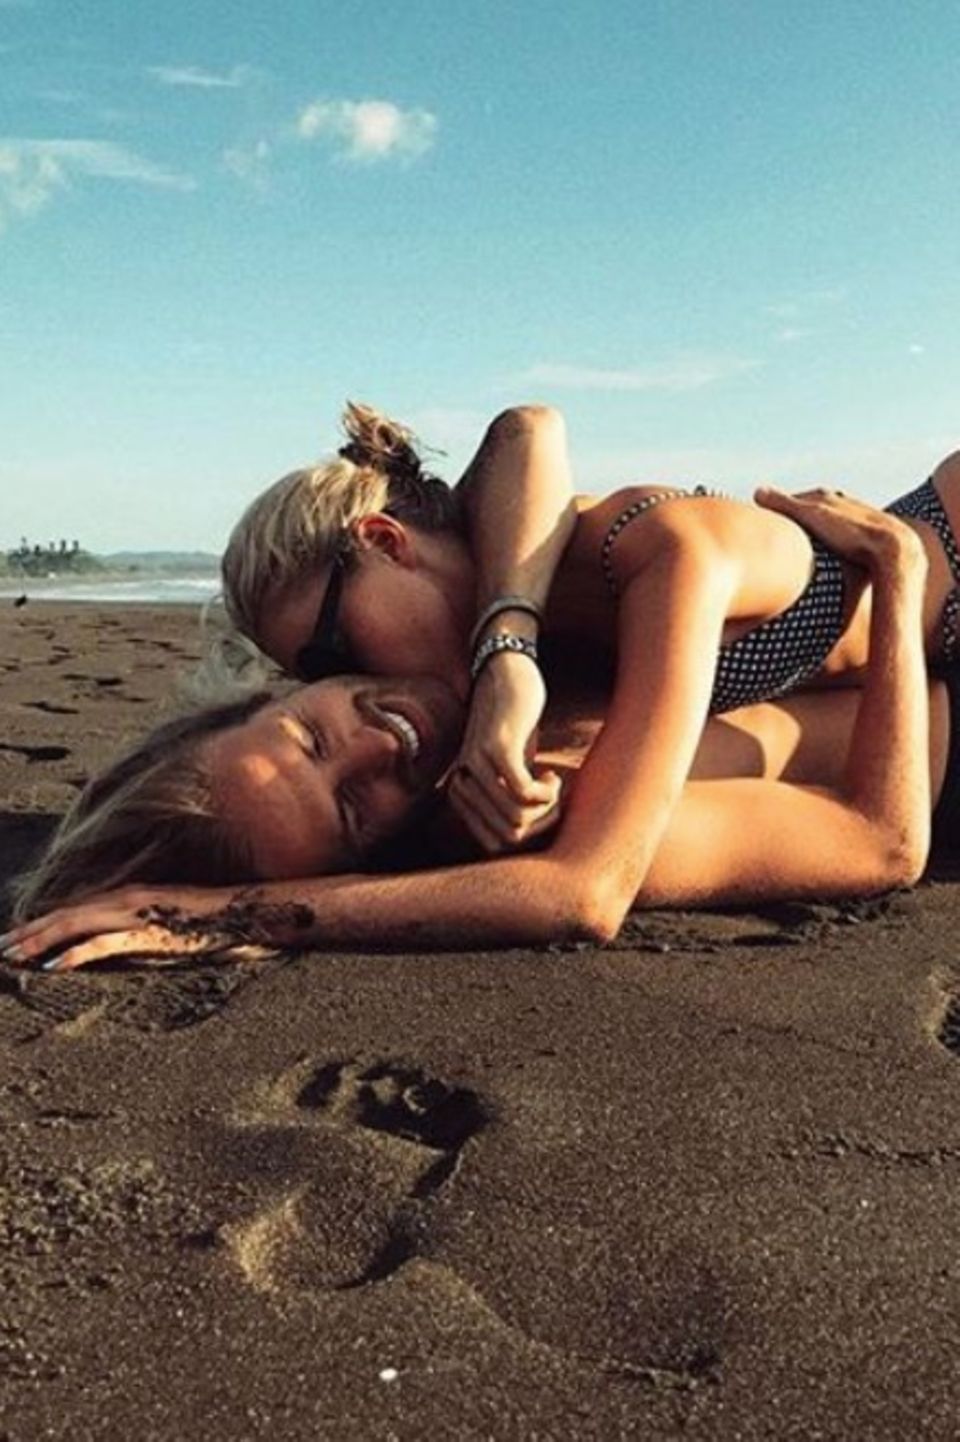 "Attacke!", postet Elsa Hosk scherzend. Das Supermodel und ihr Freund Tom Daly schmusen eng ineinander geschlungen am Strand.